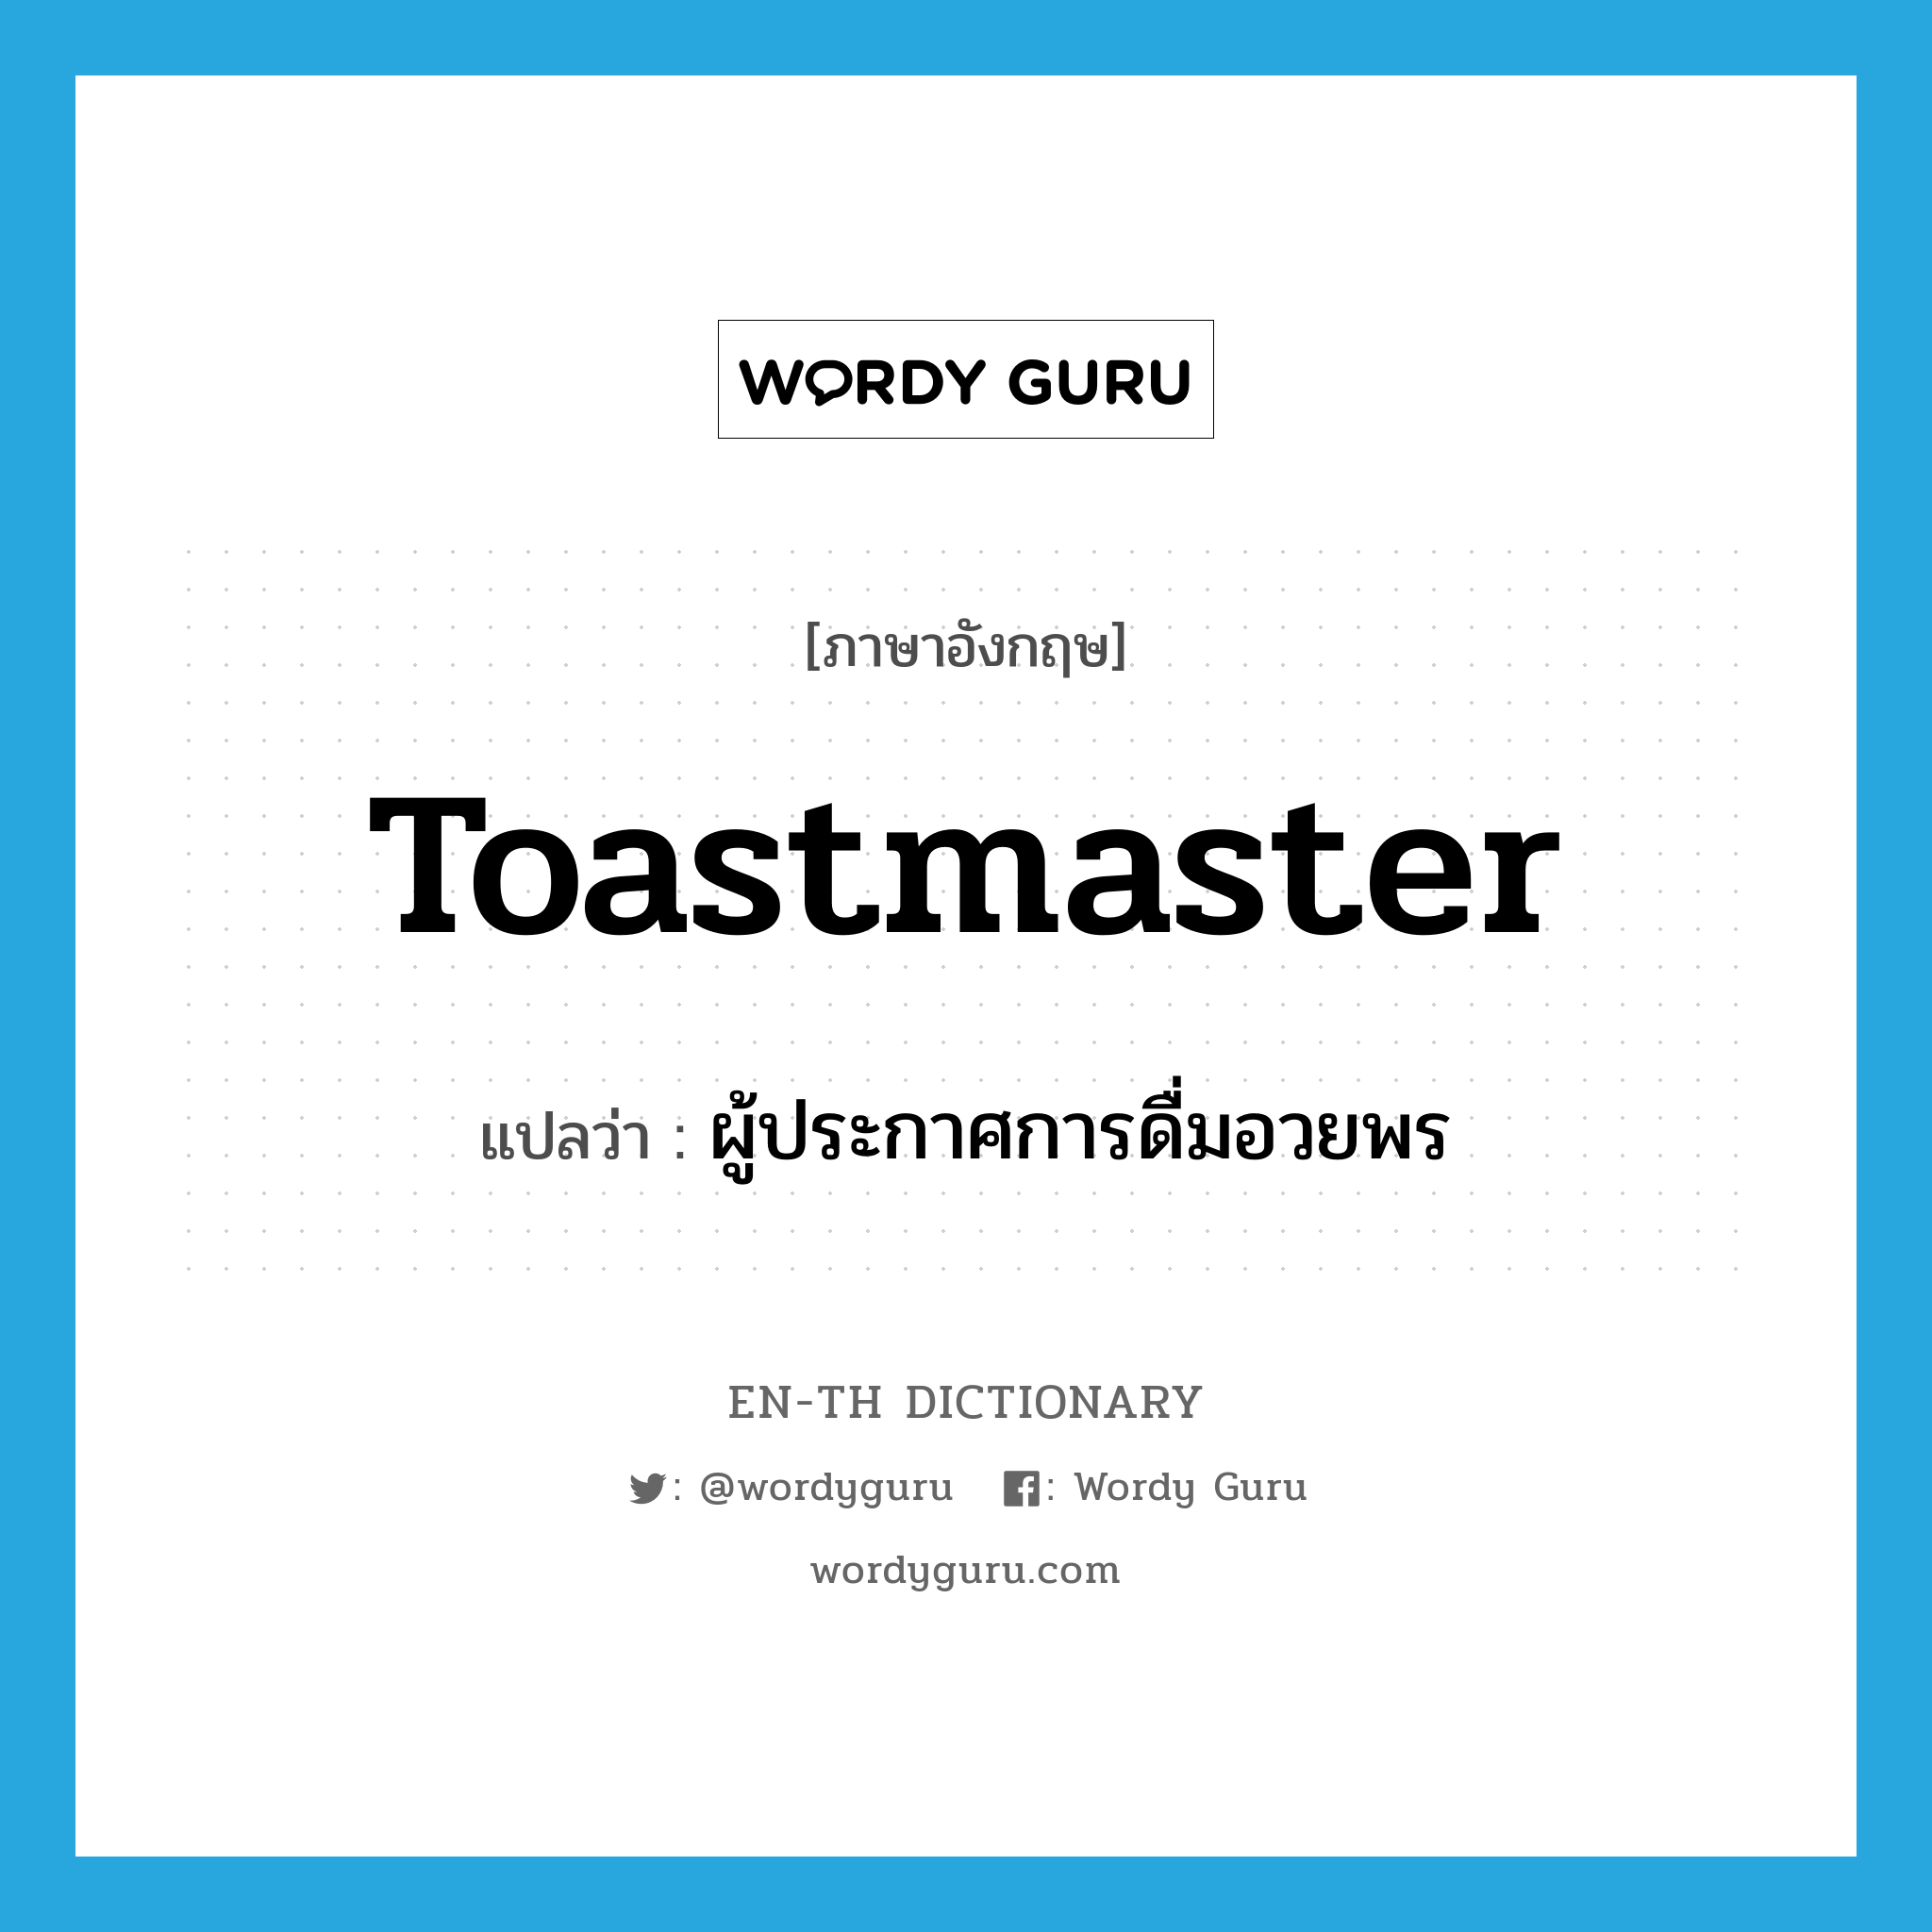 ผู้ประกาศการดื่มอวยพร ภาษาอังกฤษ?, คำศัพท์ภาษาอังกฤษ ผู้ประกาศการดื่มอวยพร แปลว่า toastmaster ประเภท N หมวด N